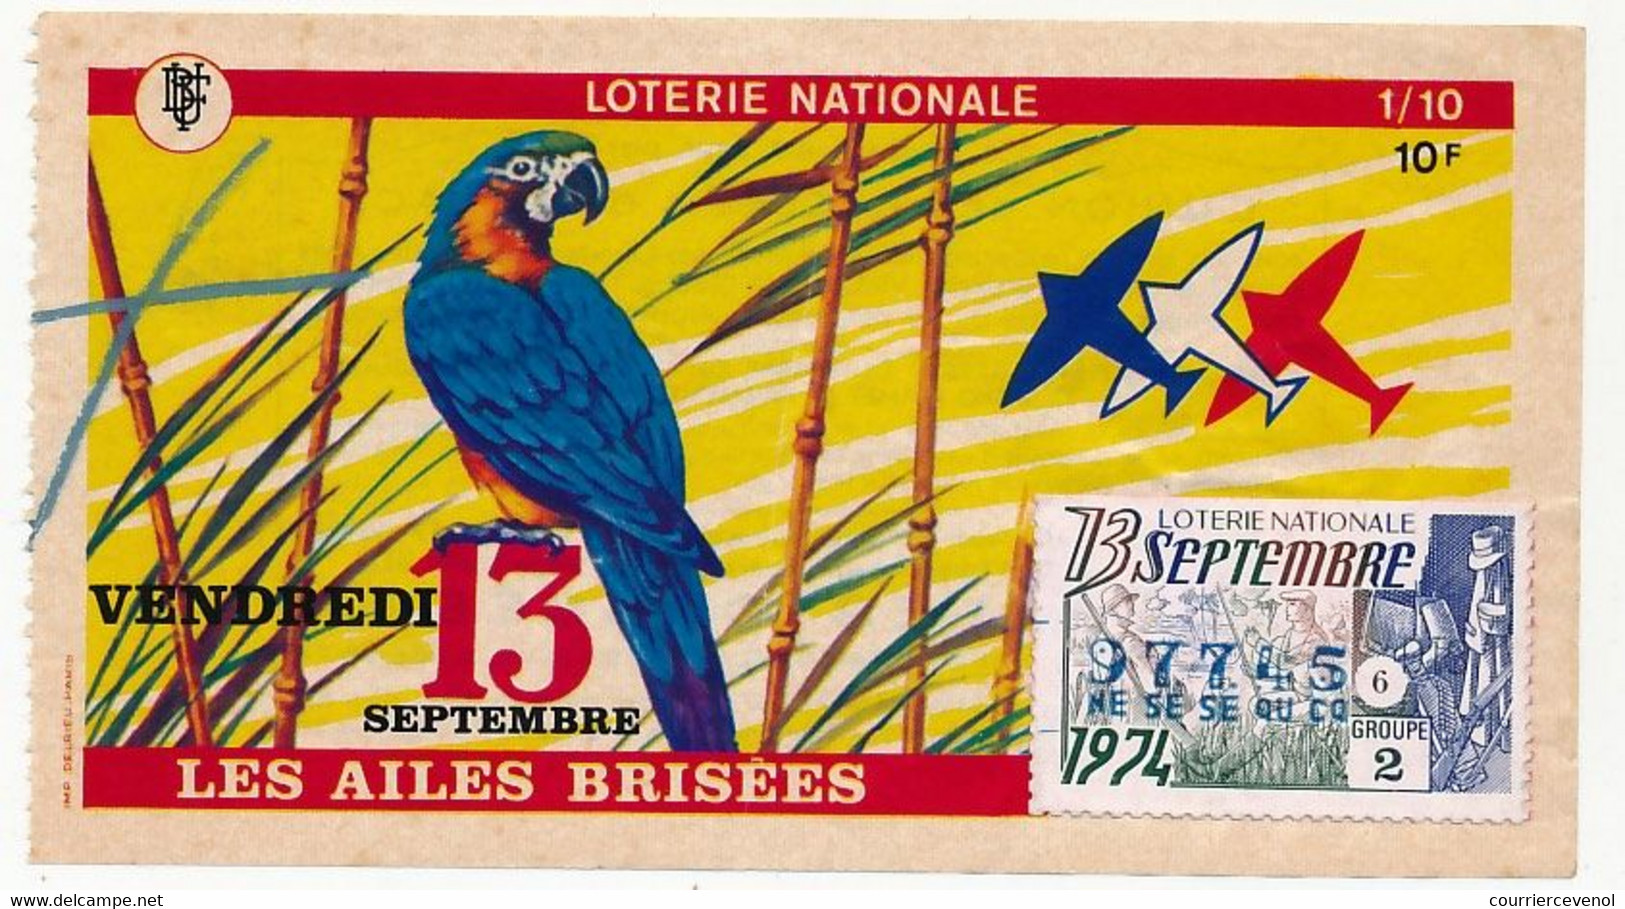 FRANCE - Loterie Nationale - 1/10ème - Les Ailes Brisées - (Perroquet) - Vendredi 13 Septembre 1974 - Lotterielose